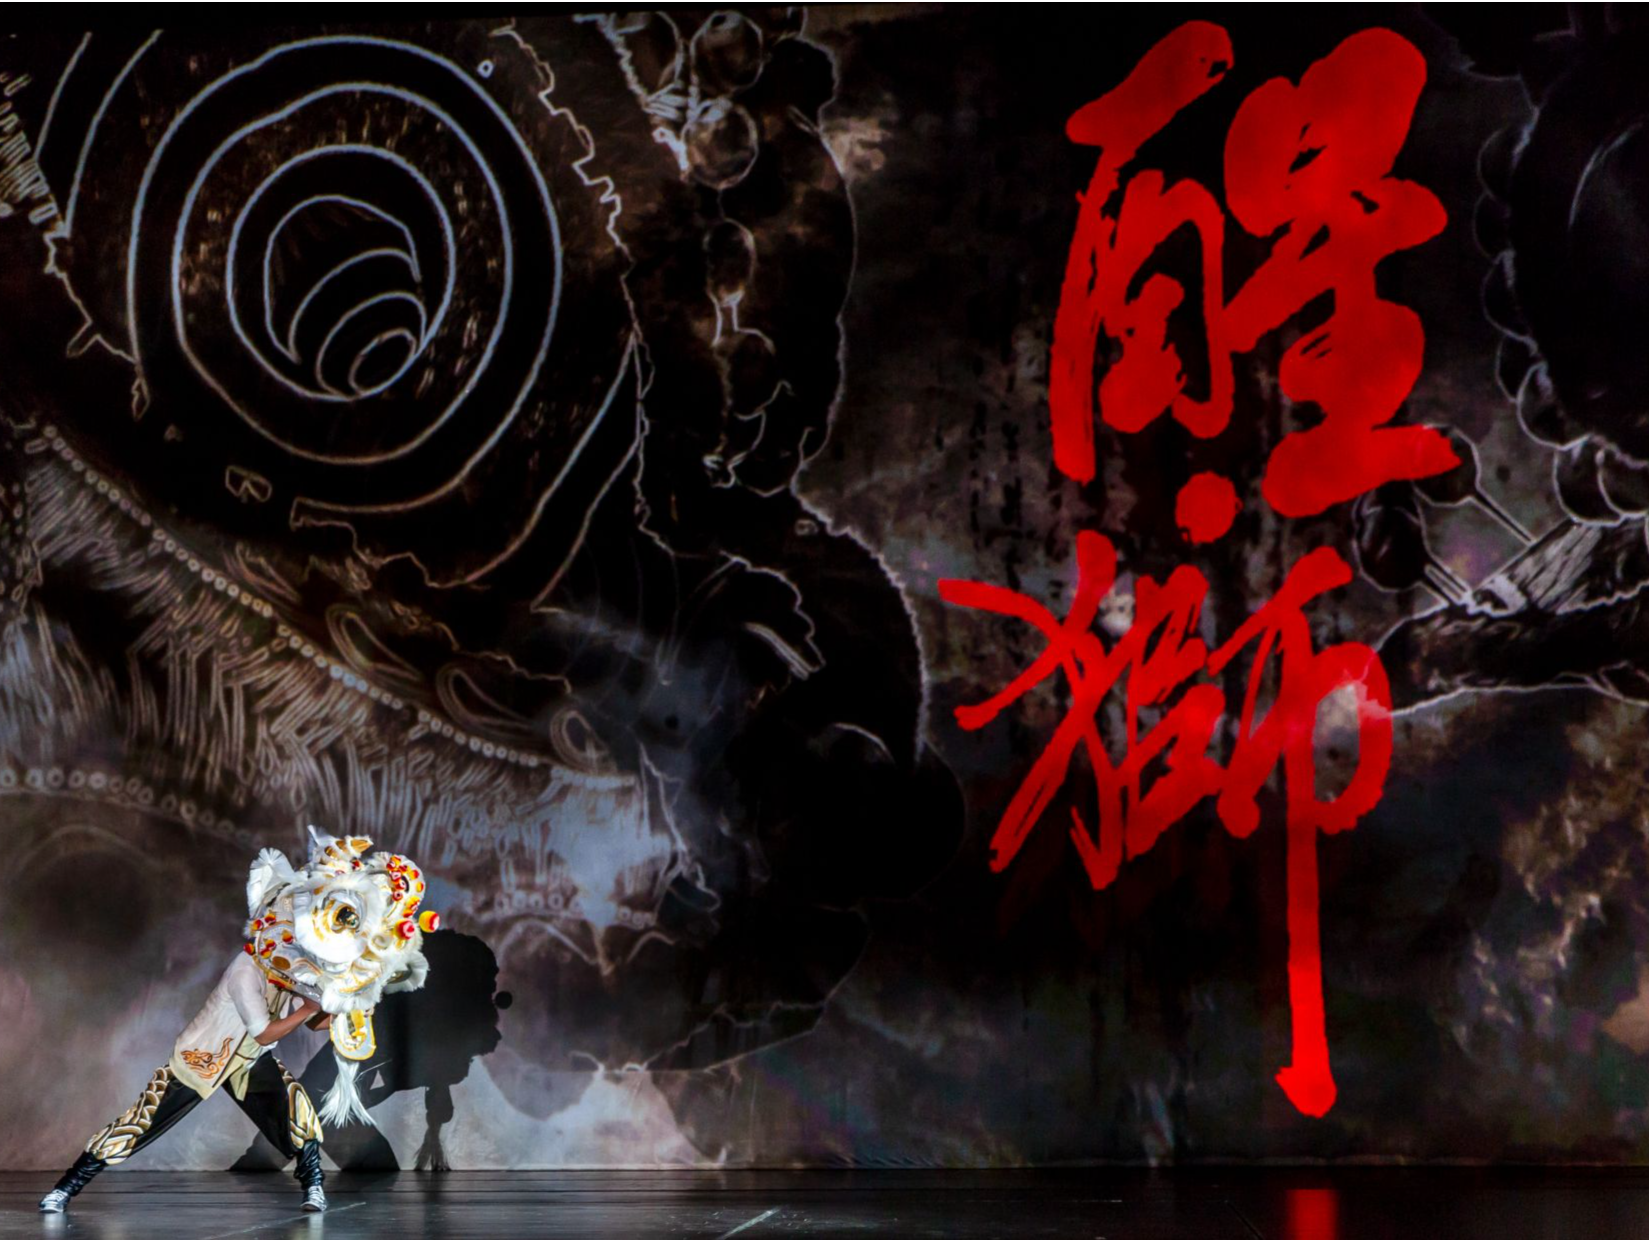 醒狮醒国魂！舞剧《醒·狮》3月深圳大剧院上演